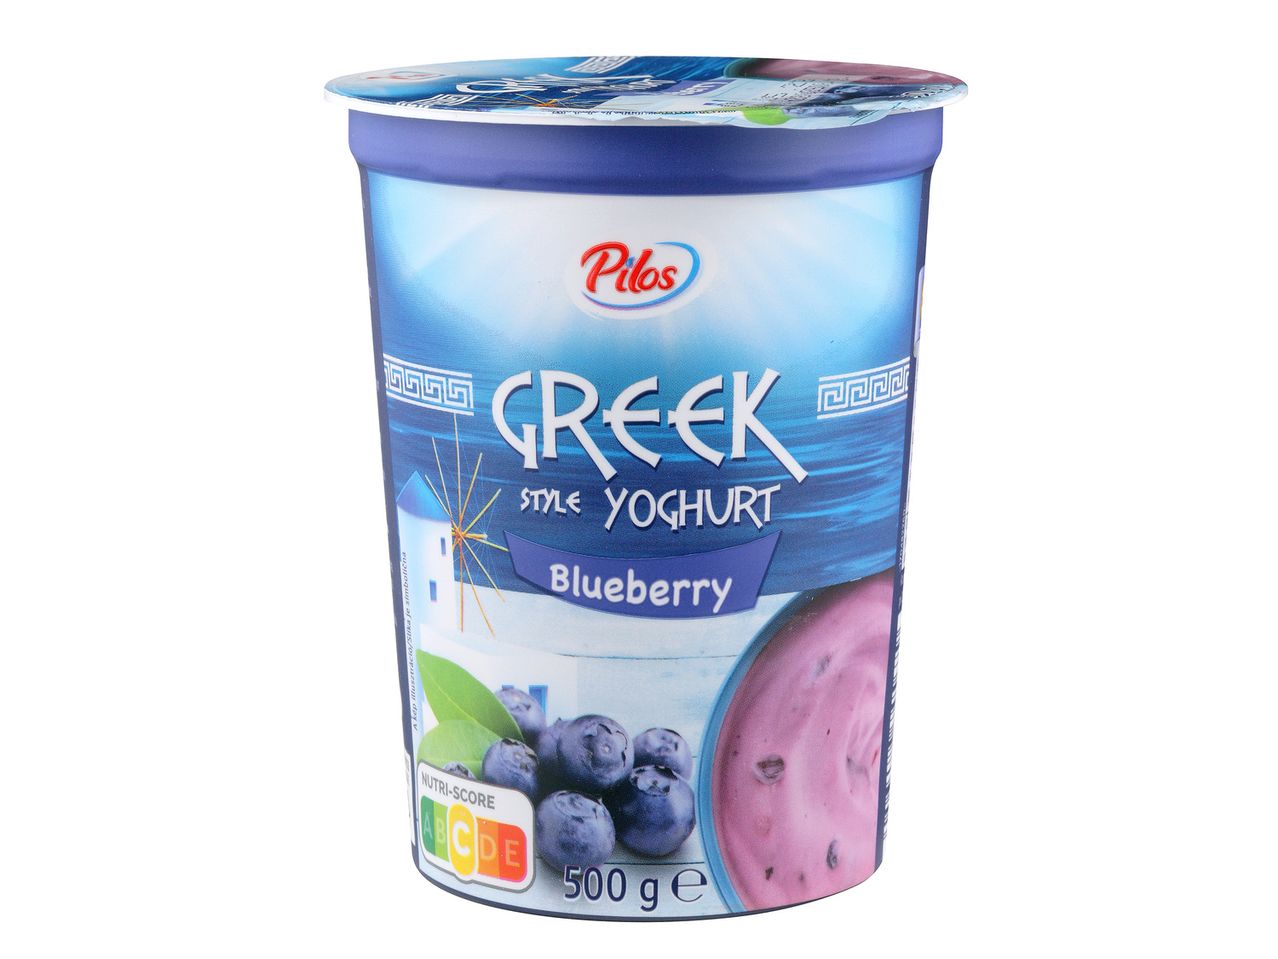 Pojdi na celozaslonski pogled: Sadni jogurt na grški način – Slika 5